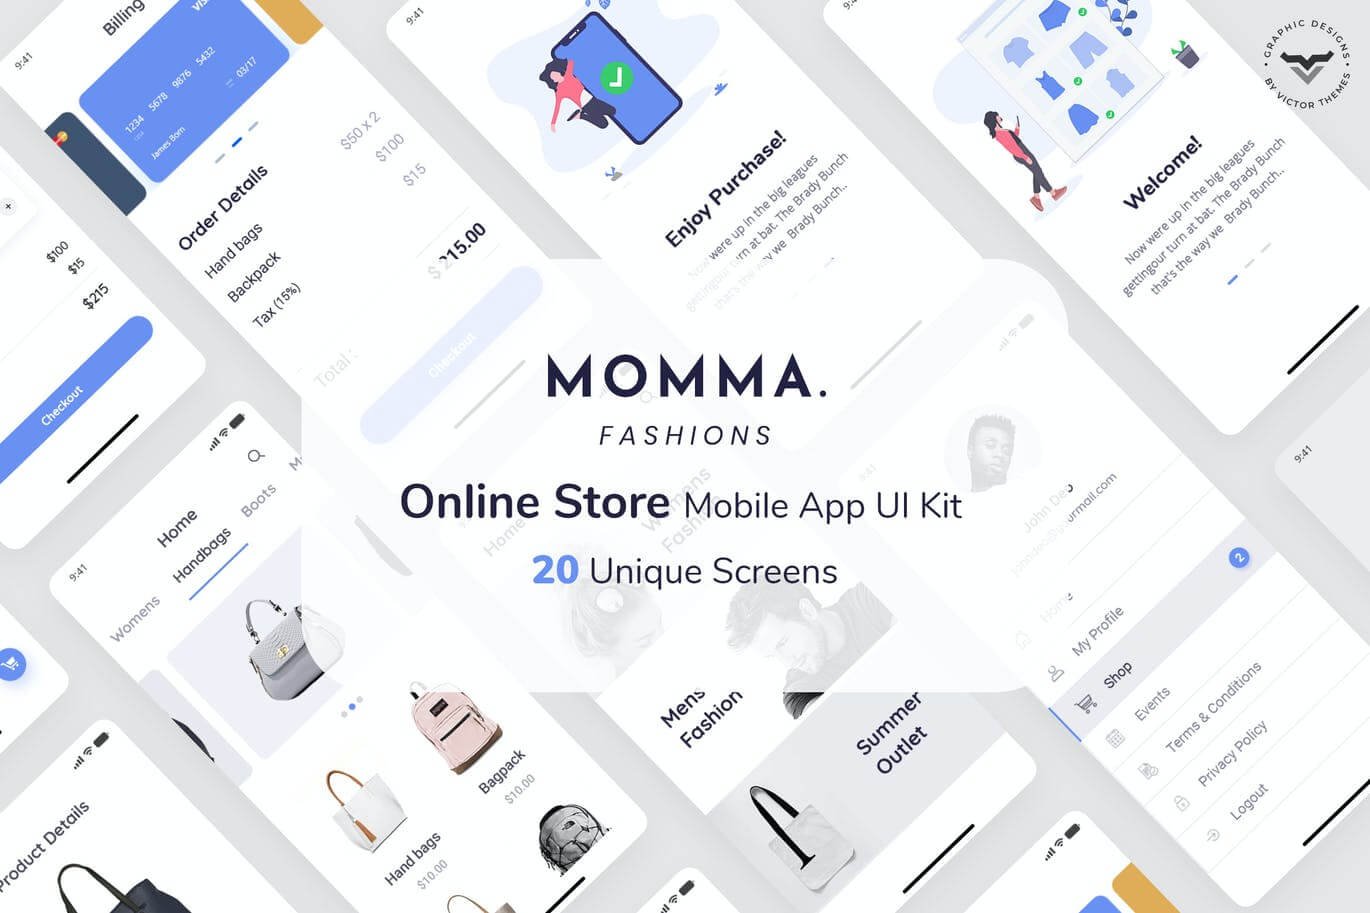 Momma Online Store Mobile App UI Kit